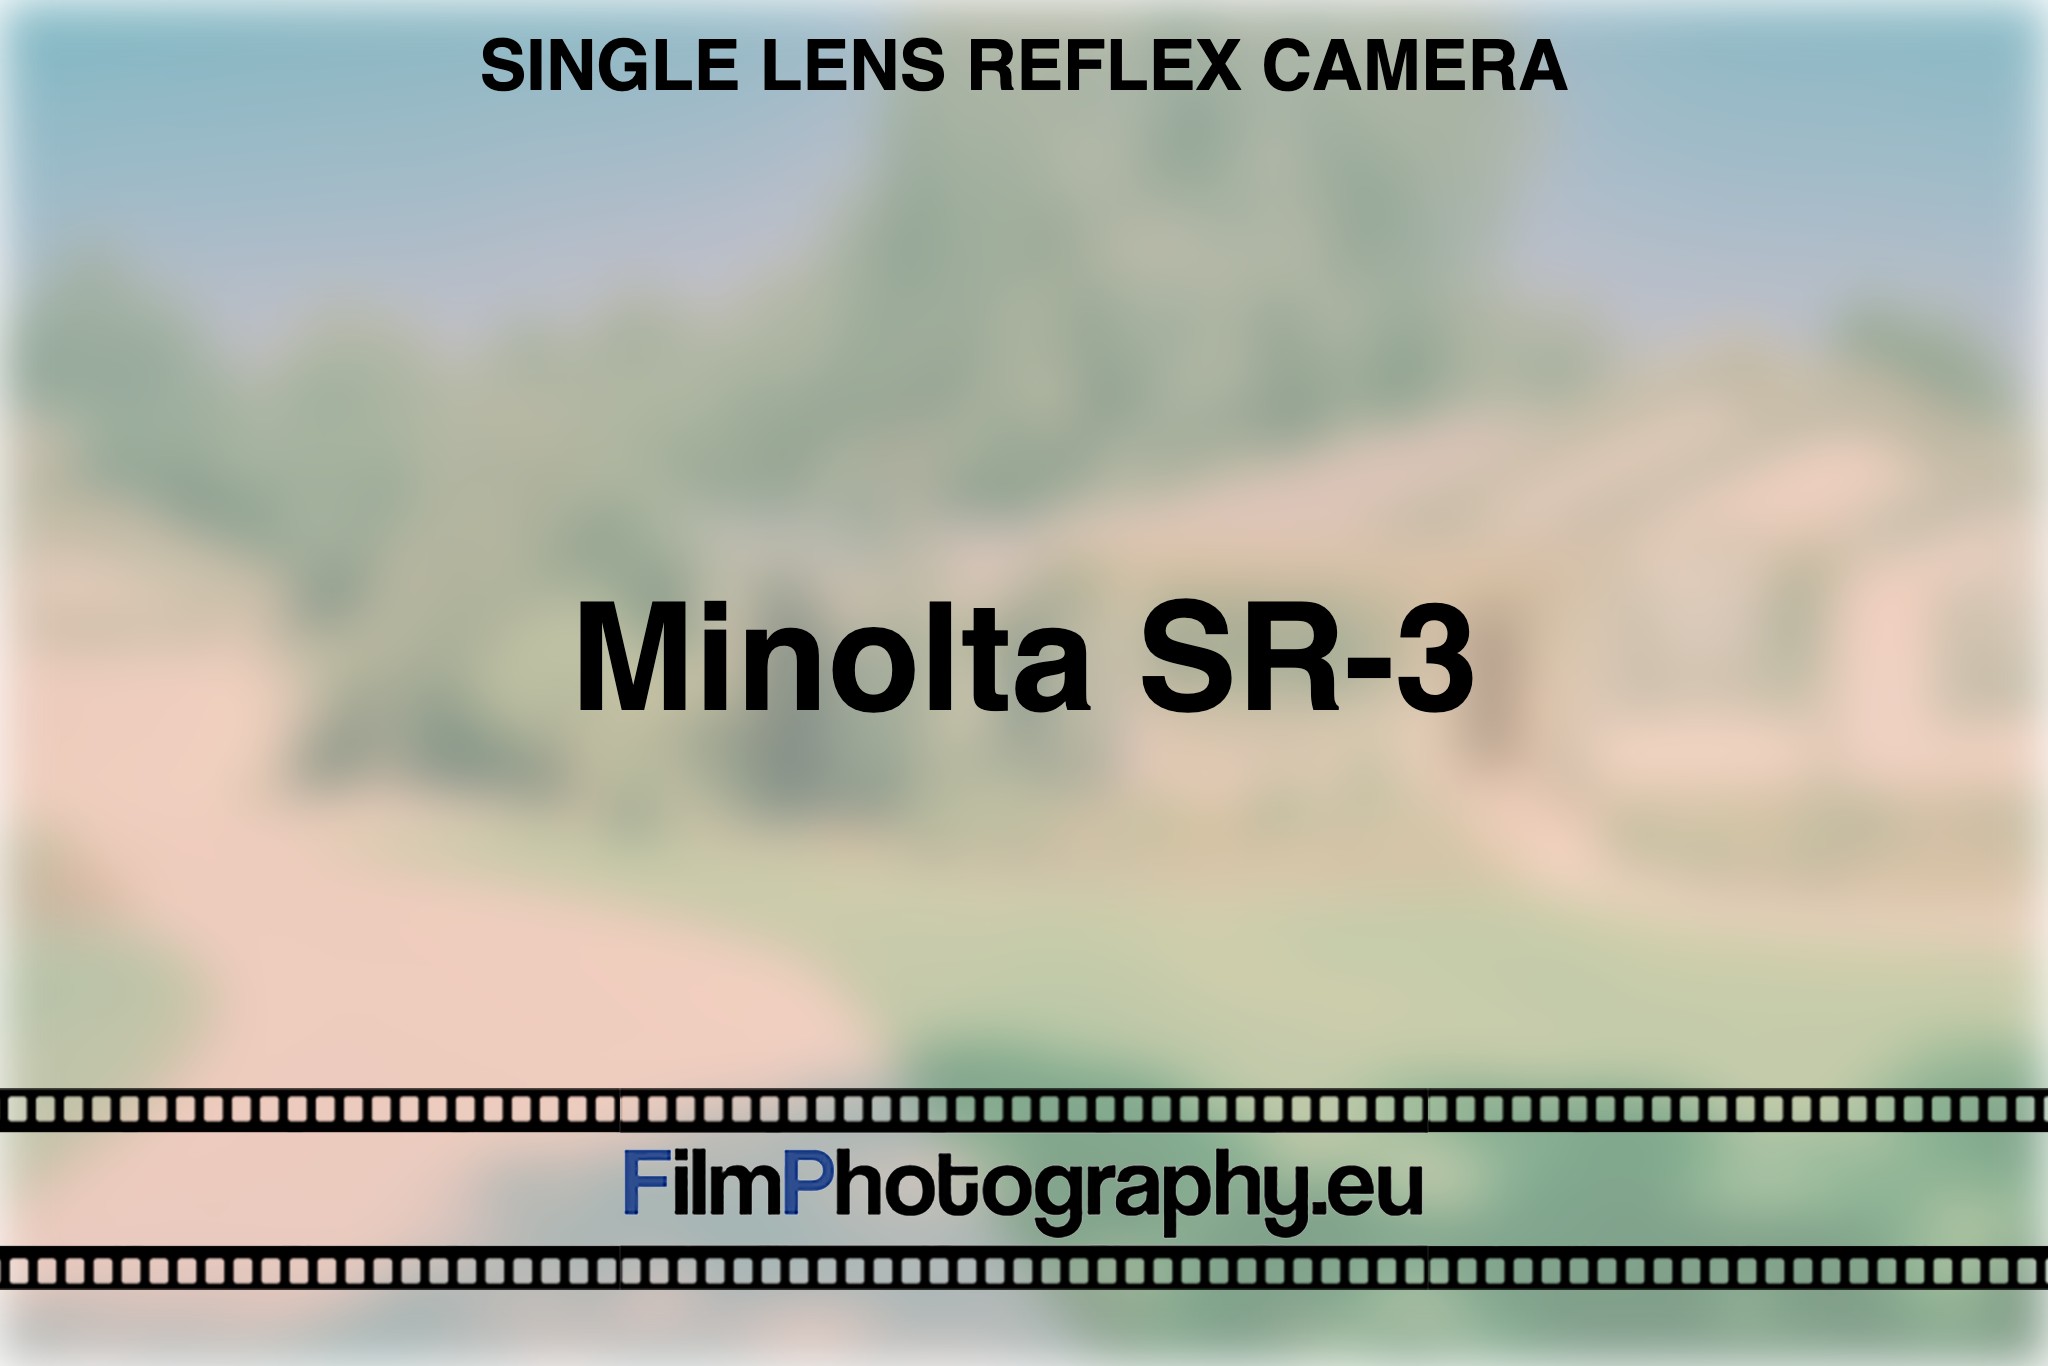 minolta-sr-3-single-lens-reflex-camera-bnv